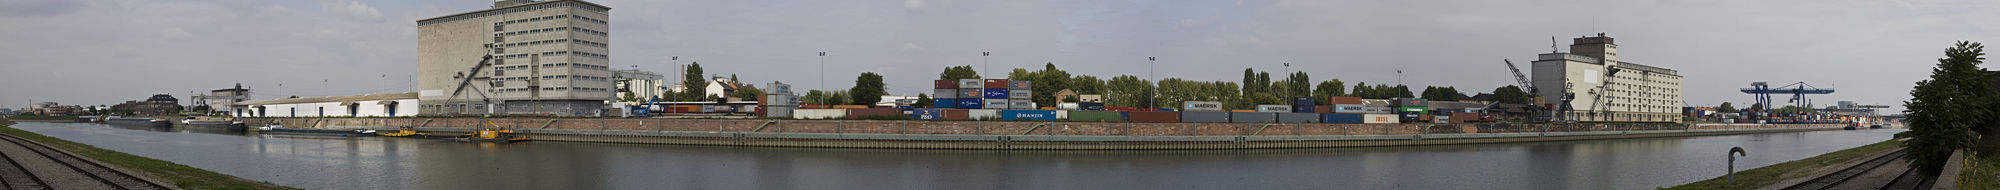 Blick auf den Mühlauhafen und das Containerterminal